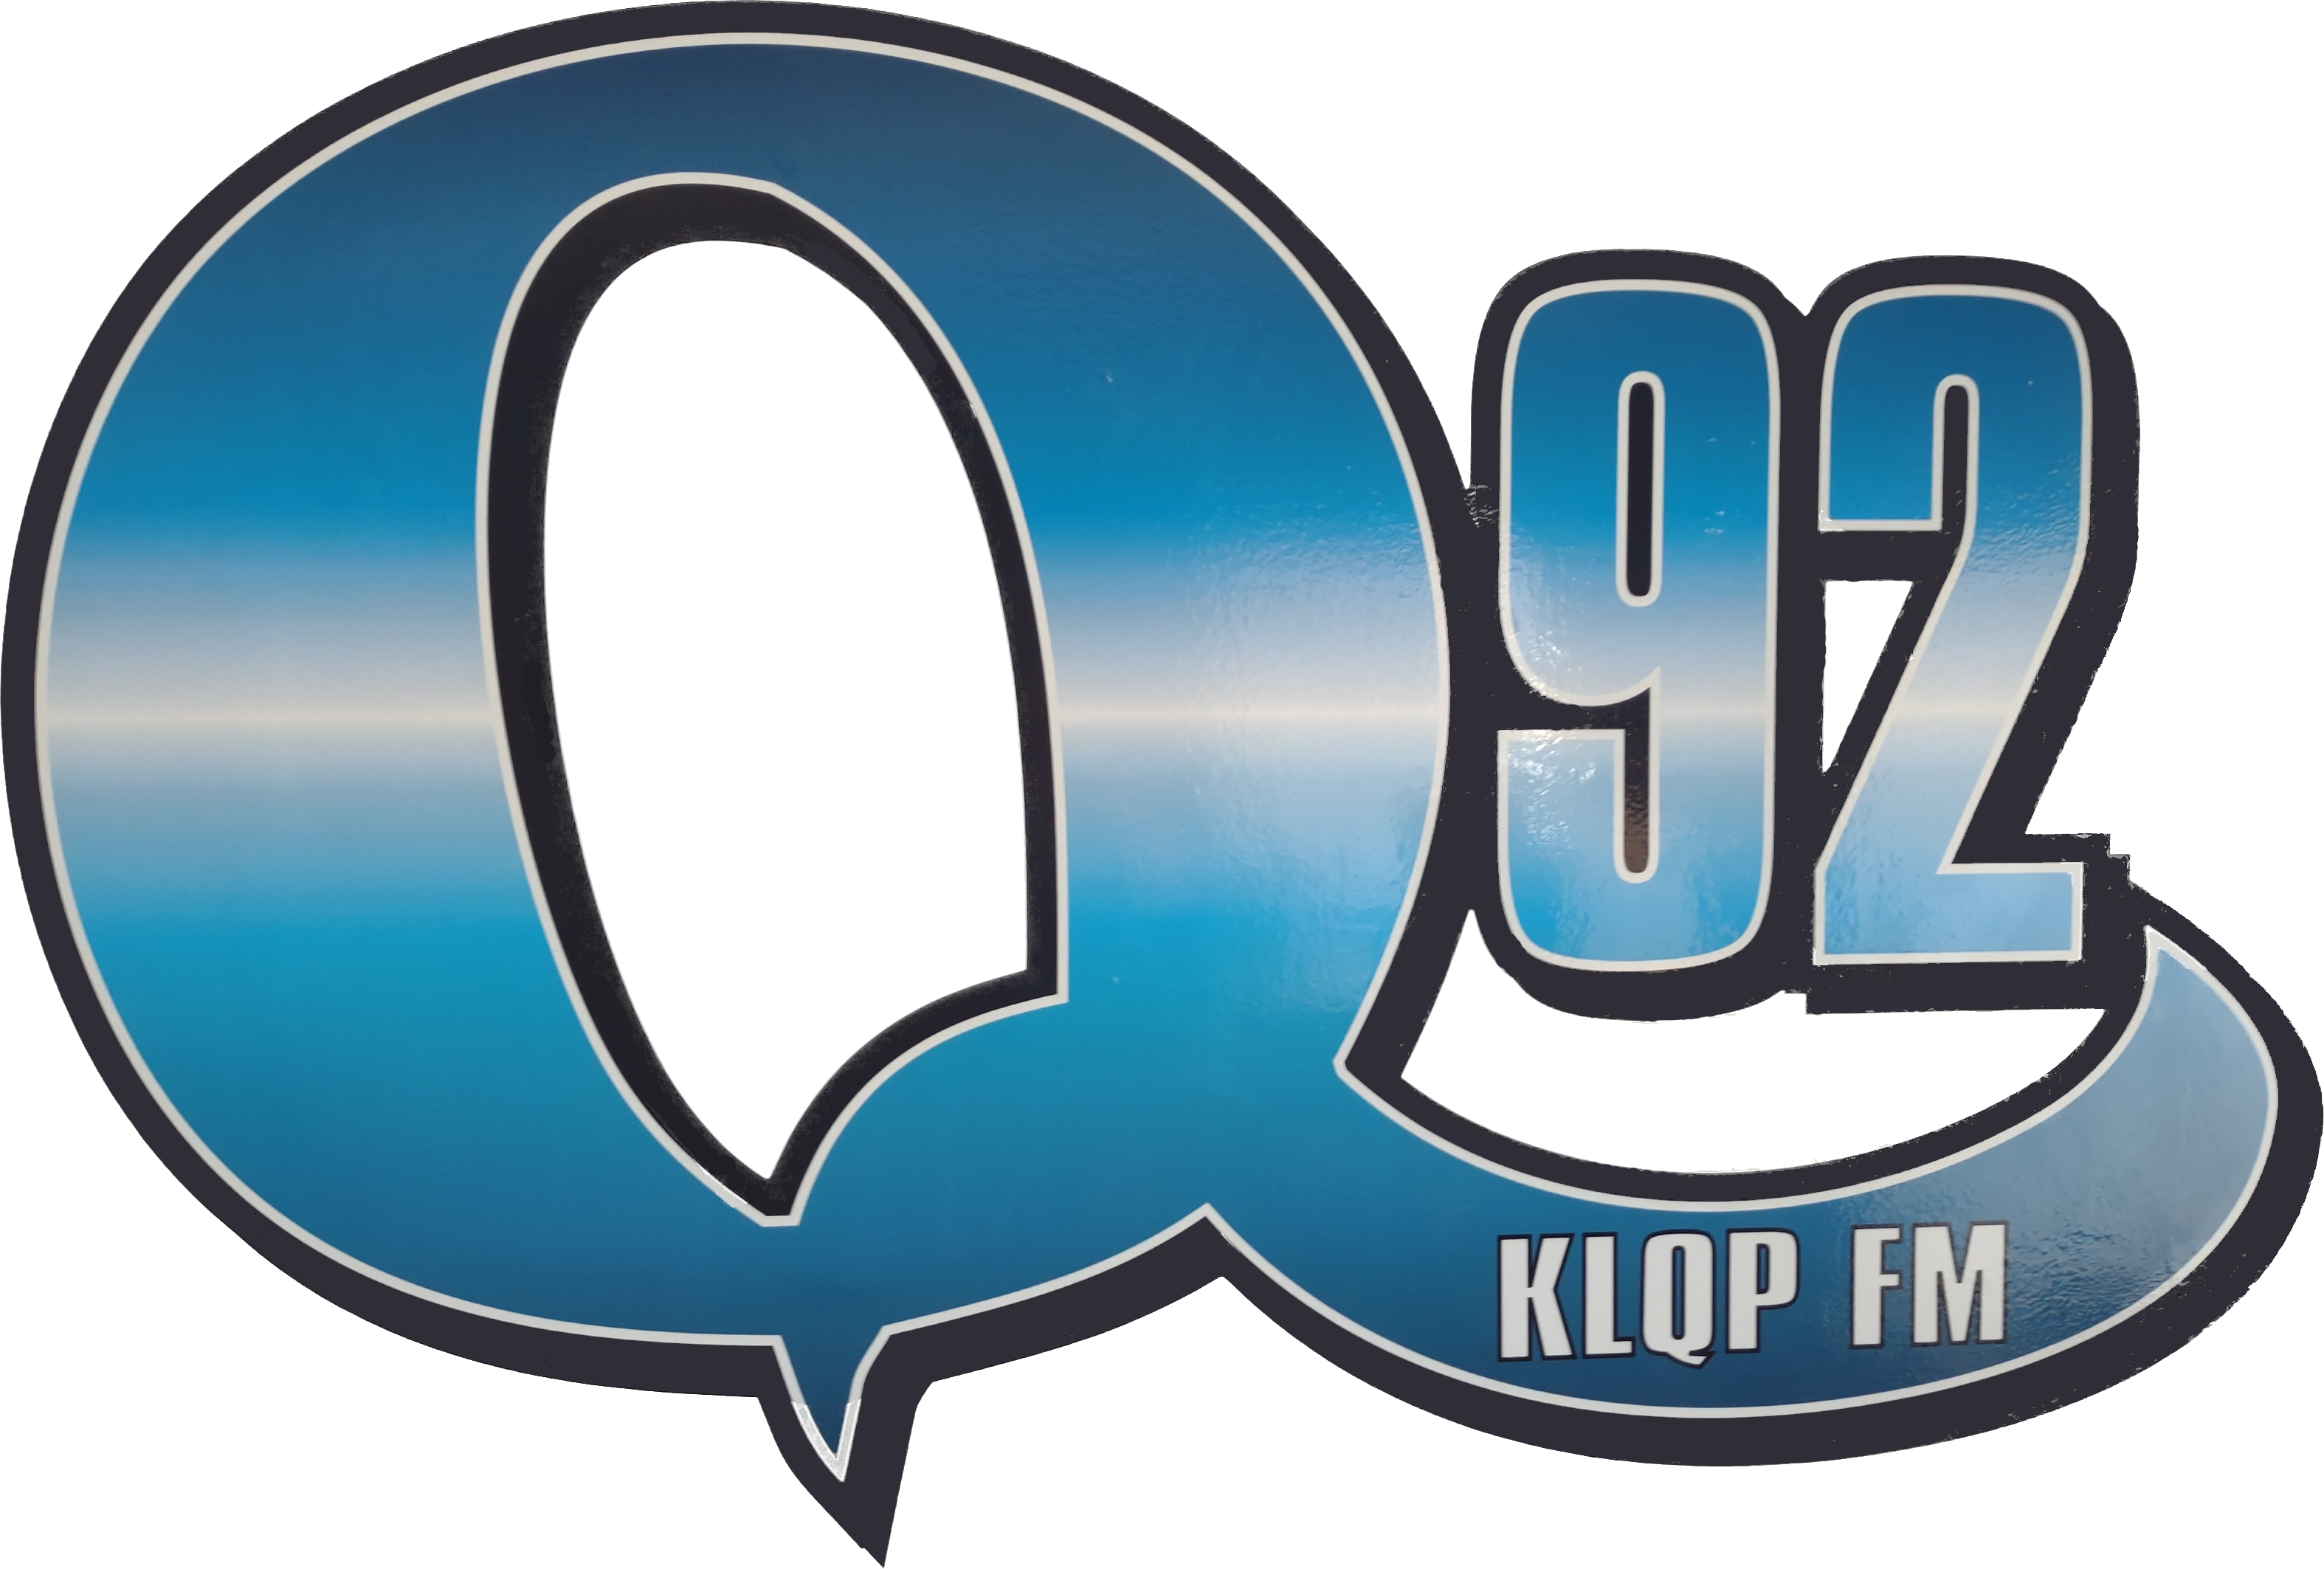 KLQP-FM "Q-92"